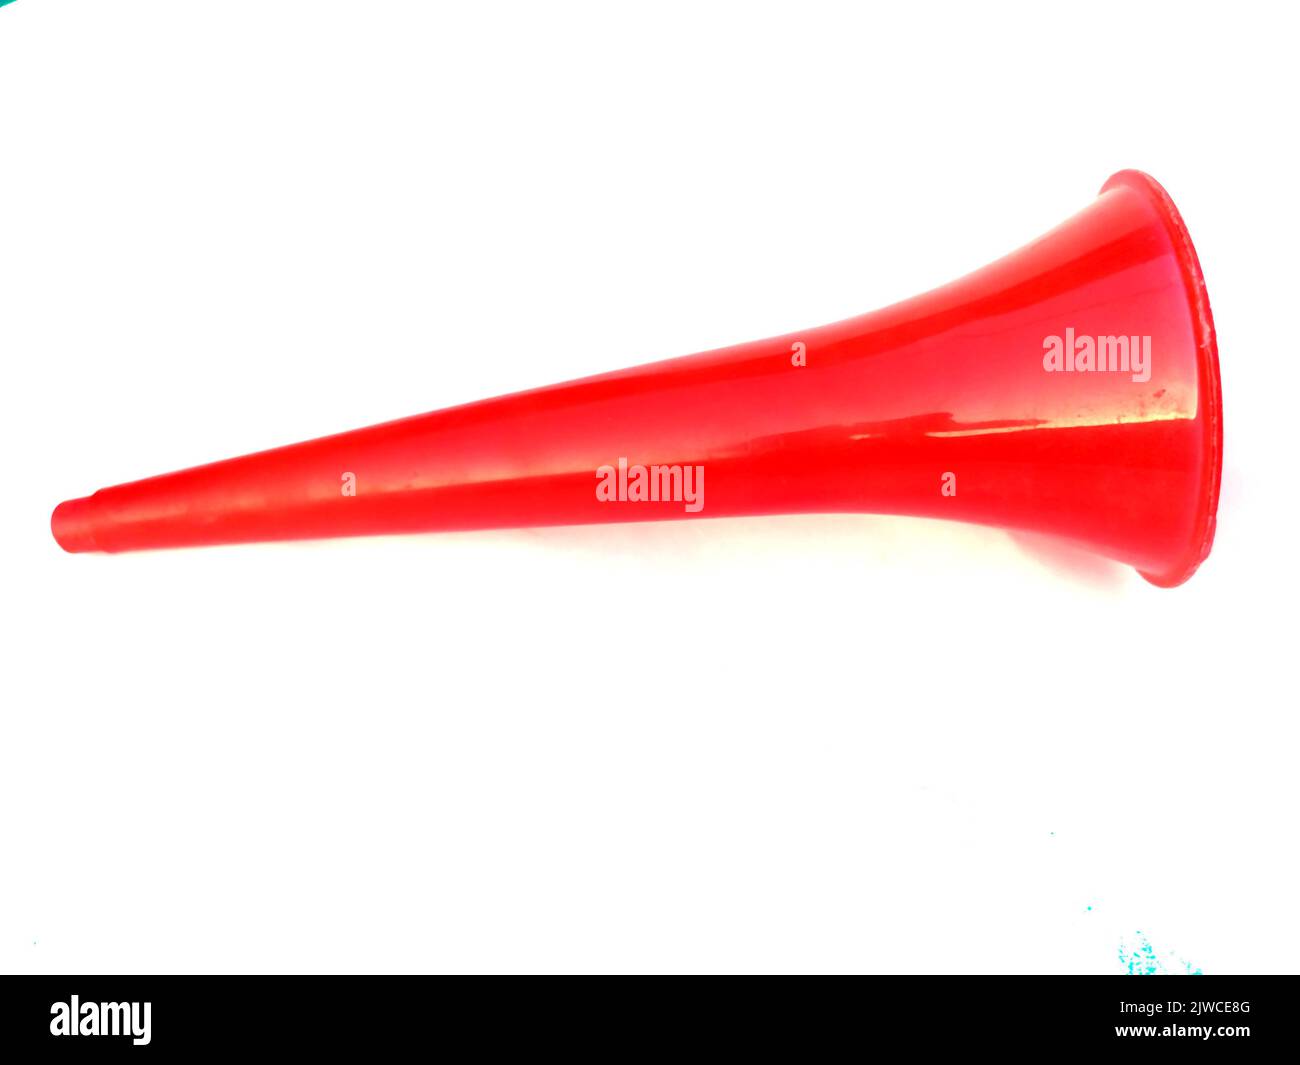 Vuvuzela - Wikipedia